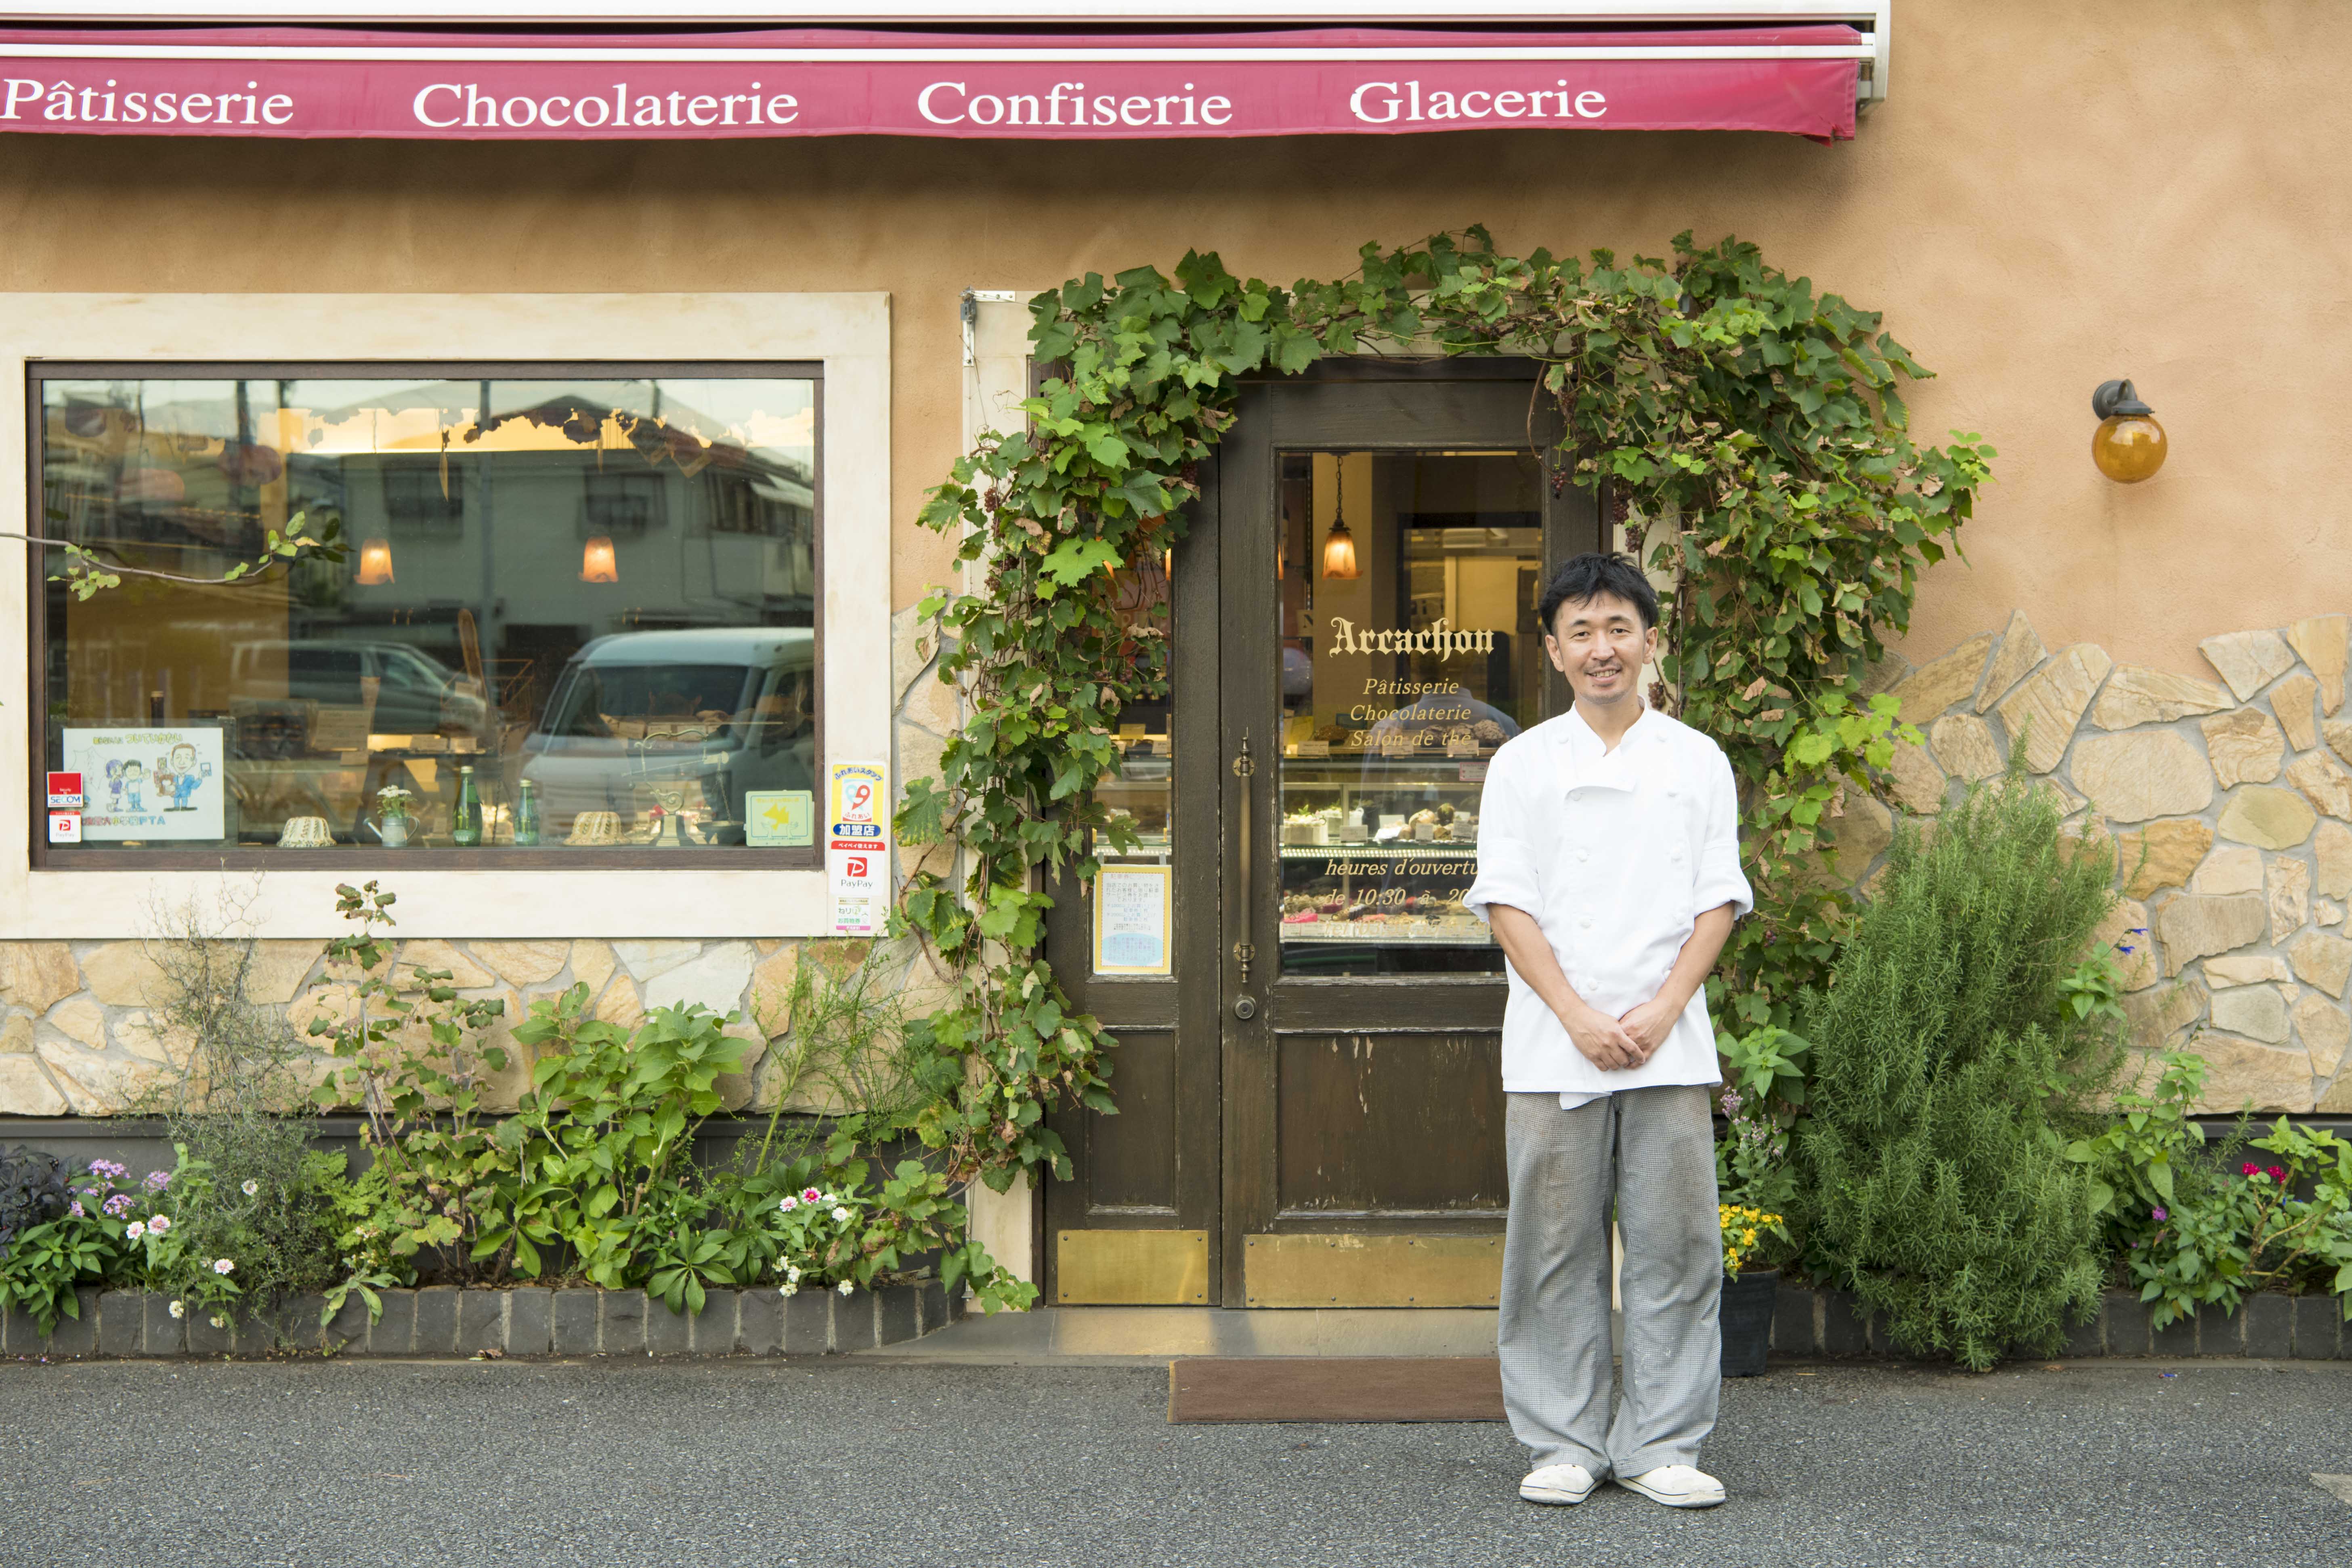 【Hanako w/ Seibu】「練馬にこの店あり」を理想に。街の菓子屋として貫くパティスリー〈アルカション〉の形。